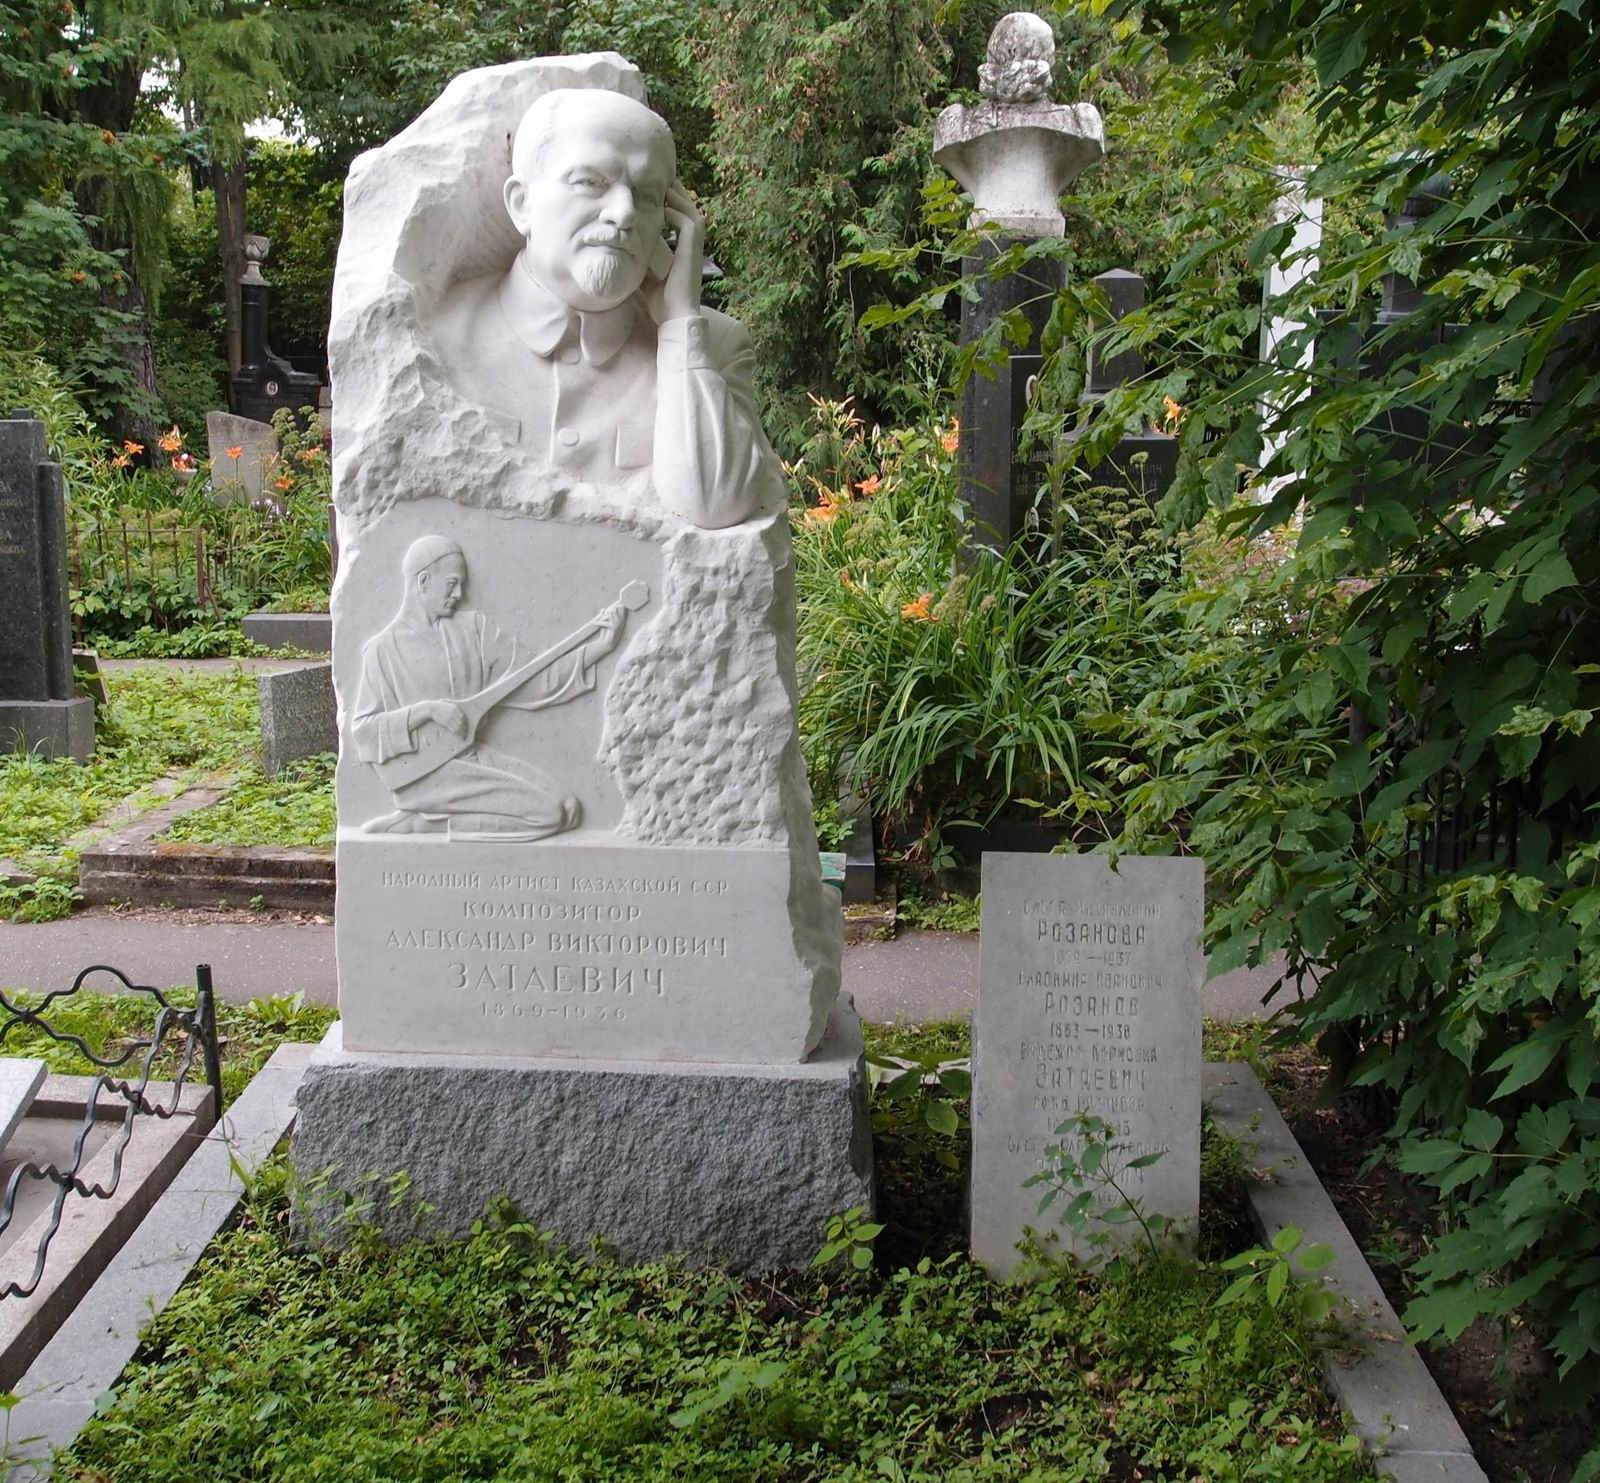 Памятник на могиле Затаевича А.В. (1869–1936), ск. Е.Янсон-Манизер, на Новодевичьем кладбище (2–23–15). Нажмите левую кнопку мыши чтобы увидеть фрагмент памятника.